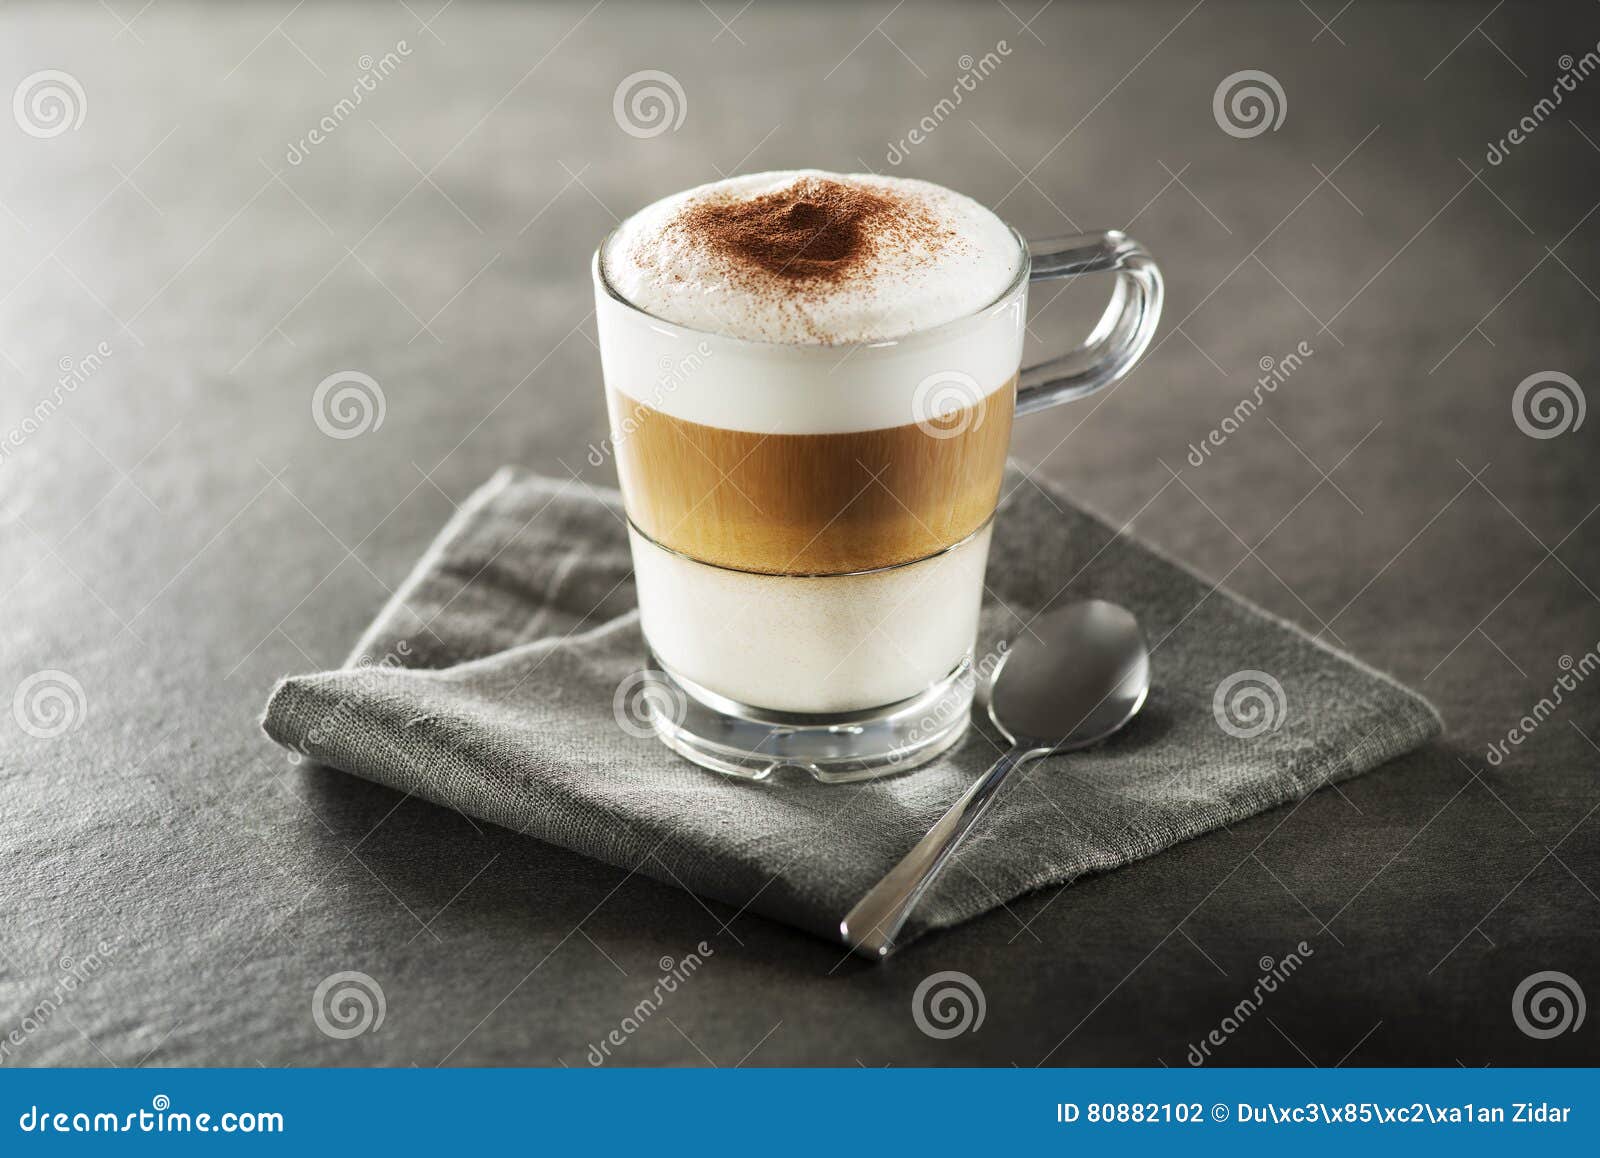 latte macchiato coffee